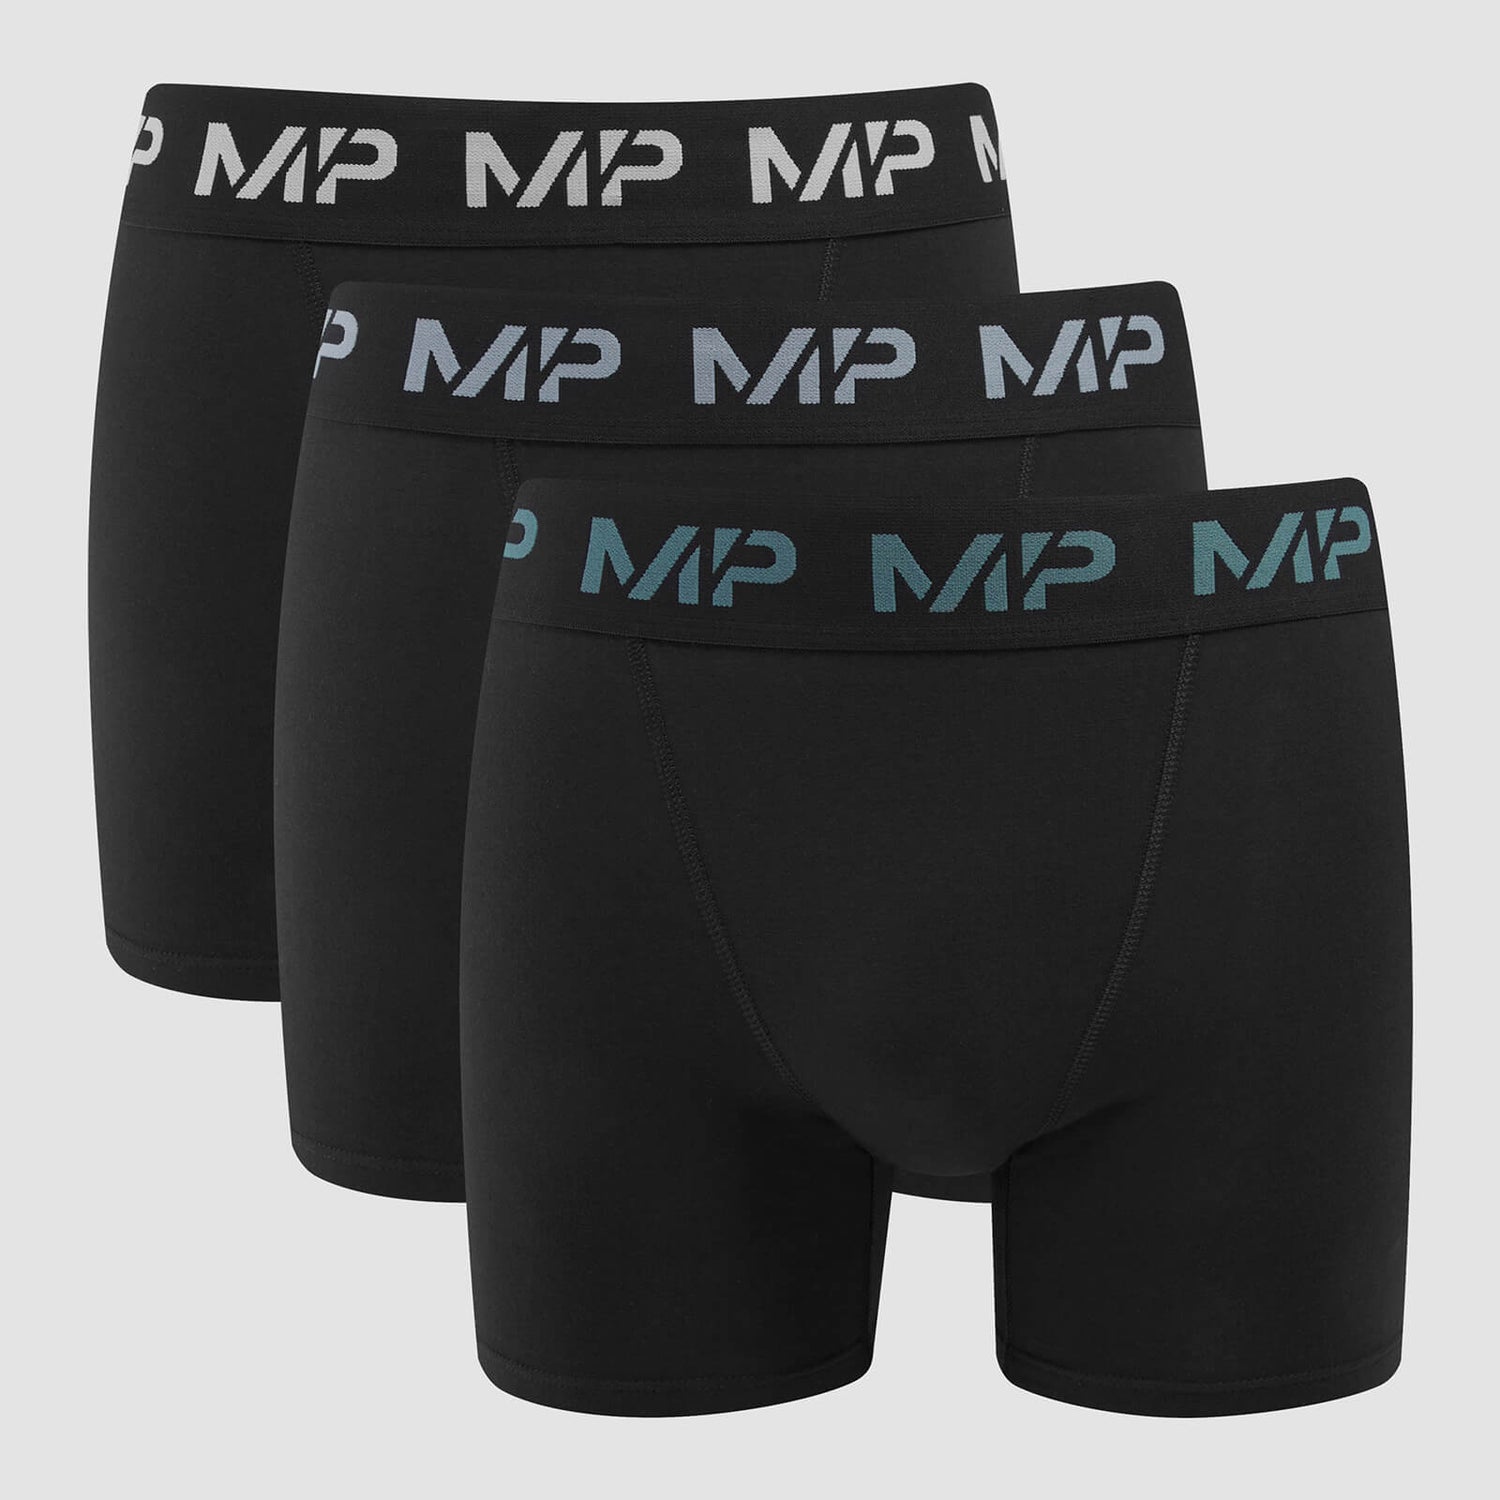 Boxeri cu siglă colorată MP pentru bărbați (pachet de 3) Negru/Albastru fumuriu/Pebble Blue/Gri întunecat - S